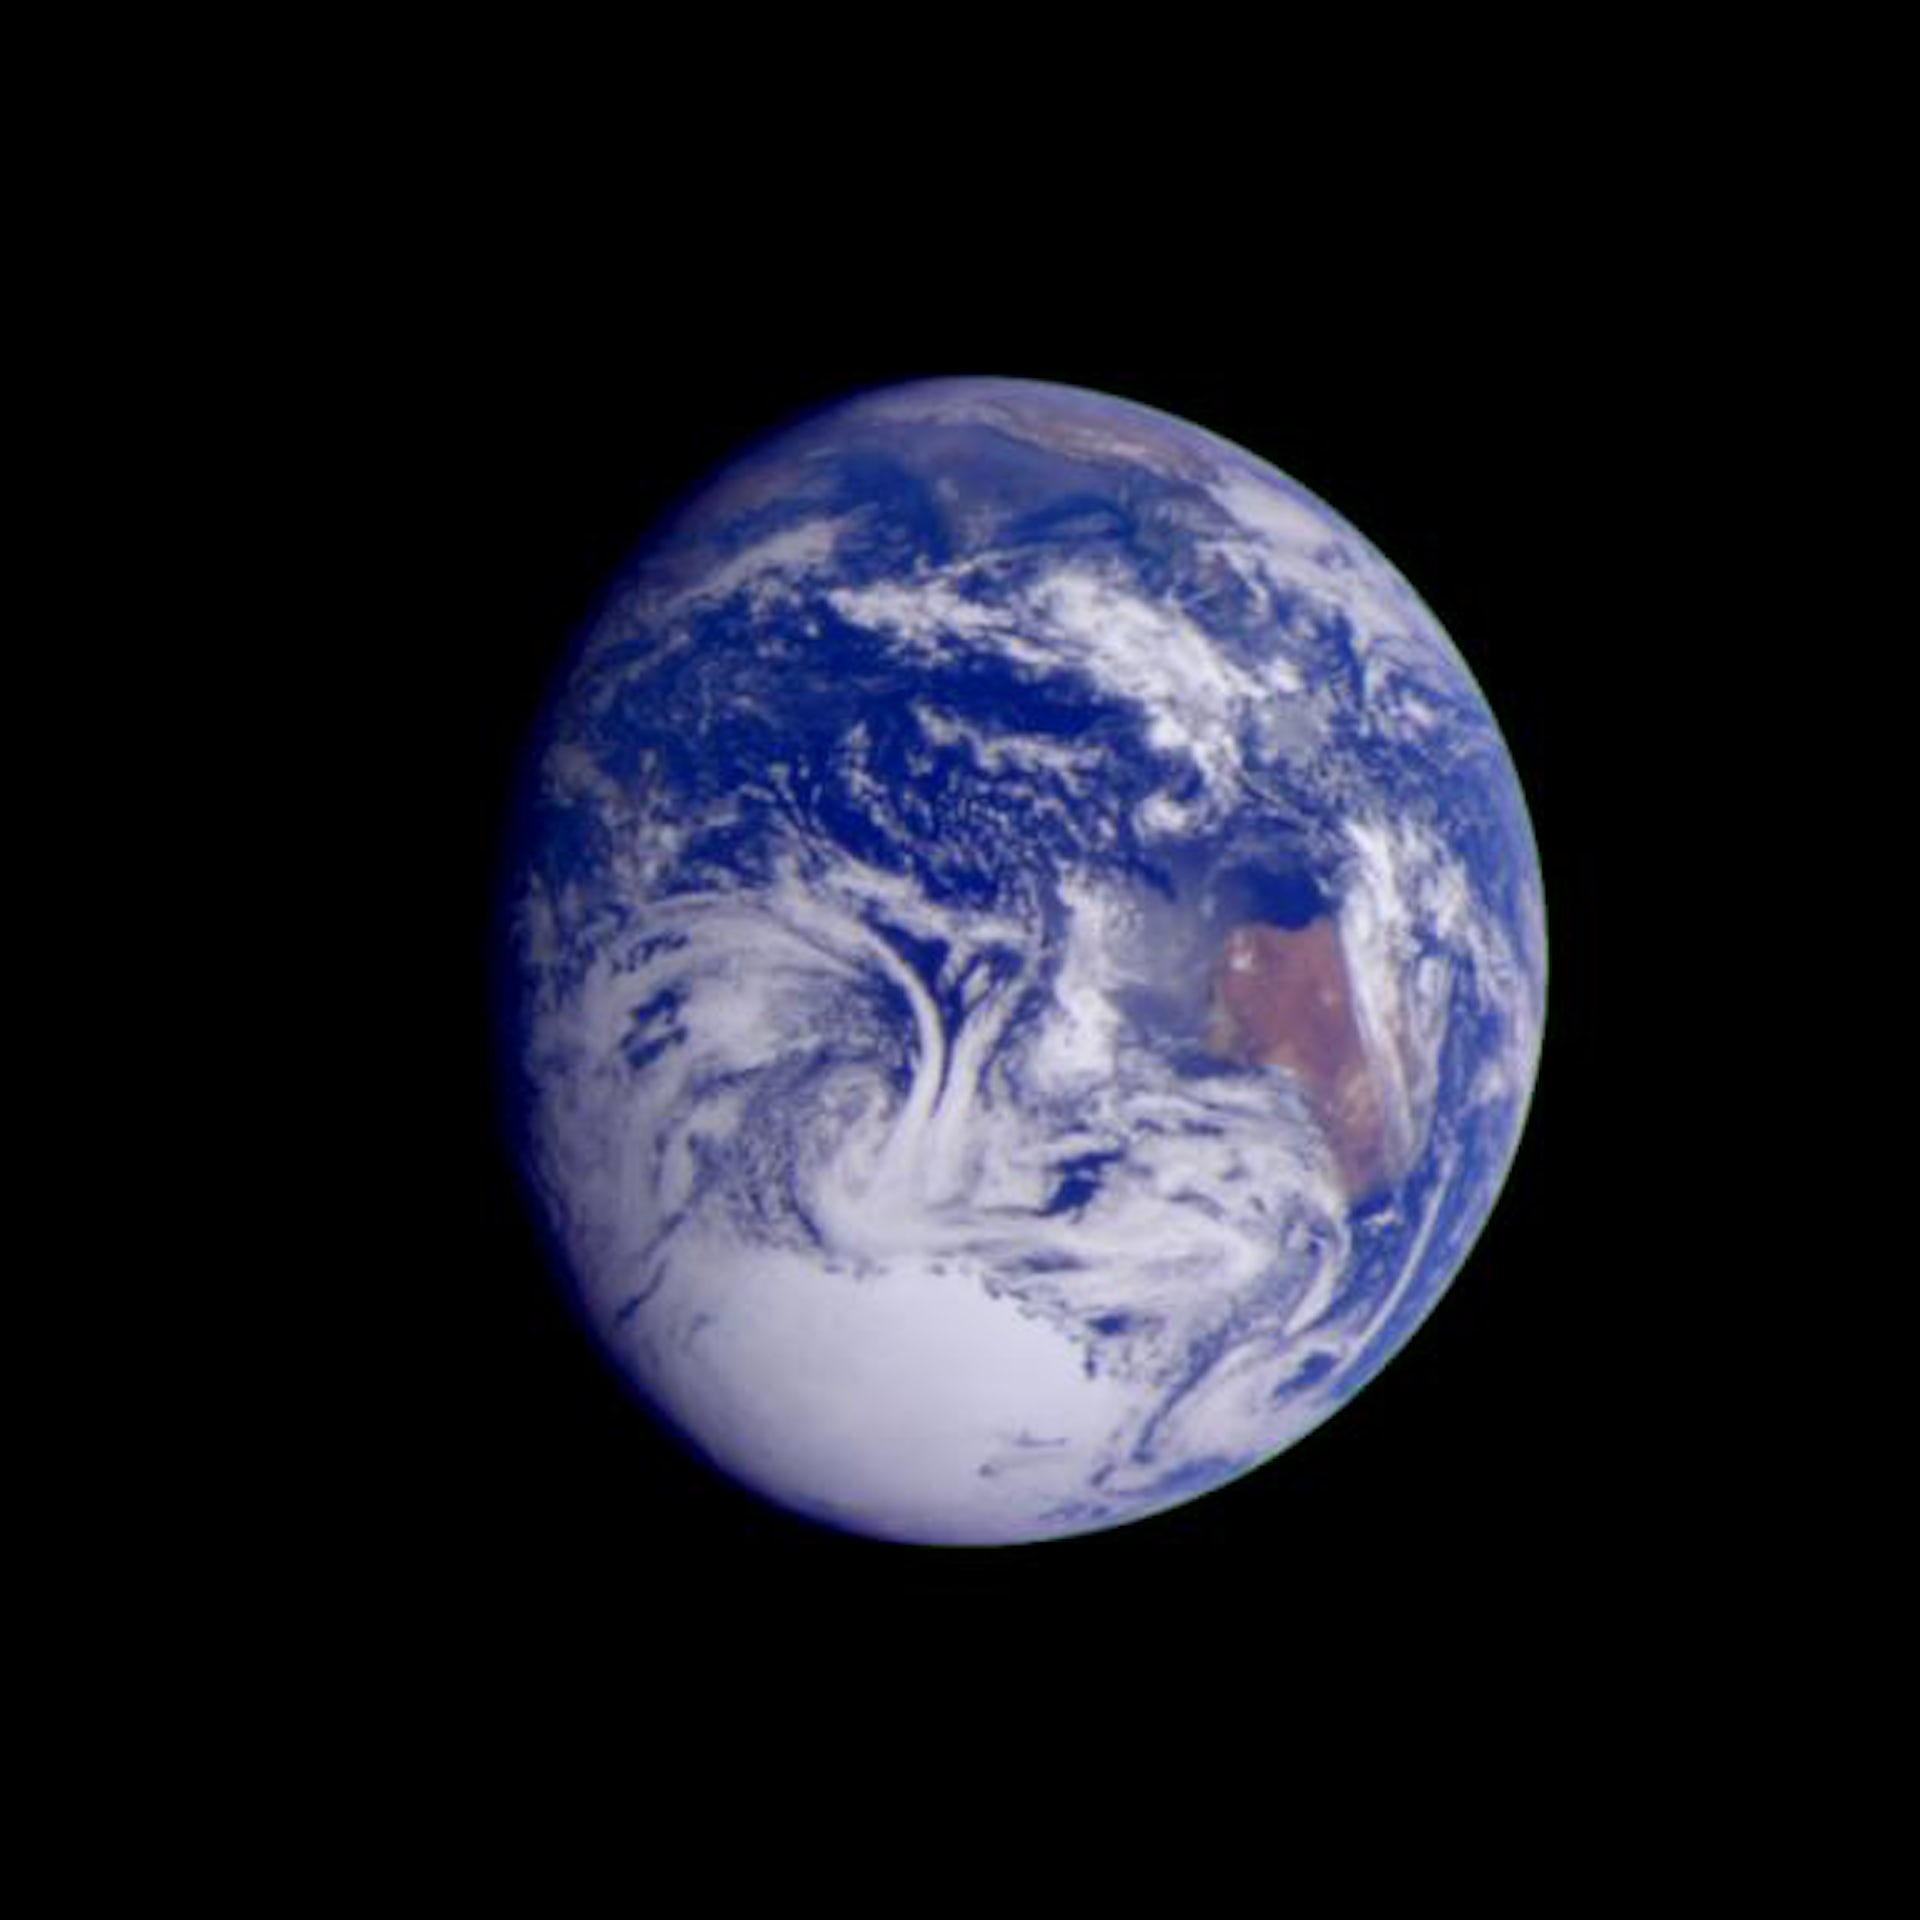 Zdjęcie wykonane przez sondę Galileo z odległości 2.4 mln km.